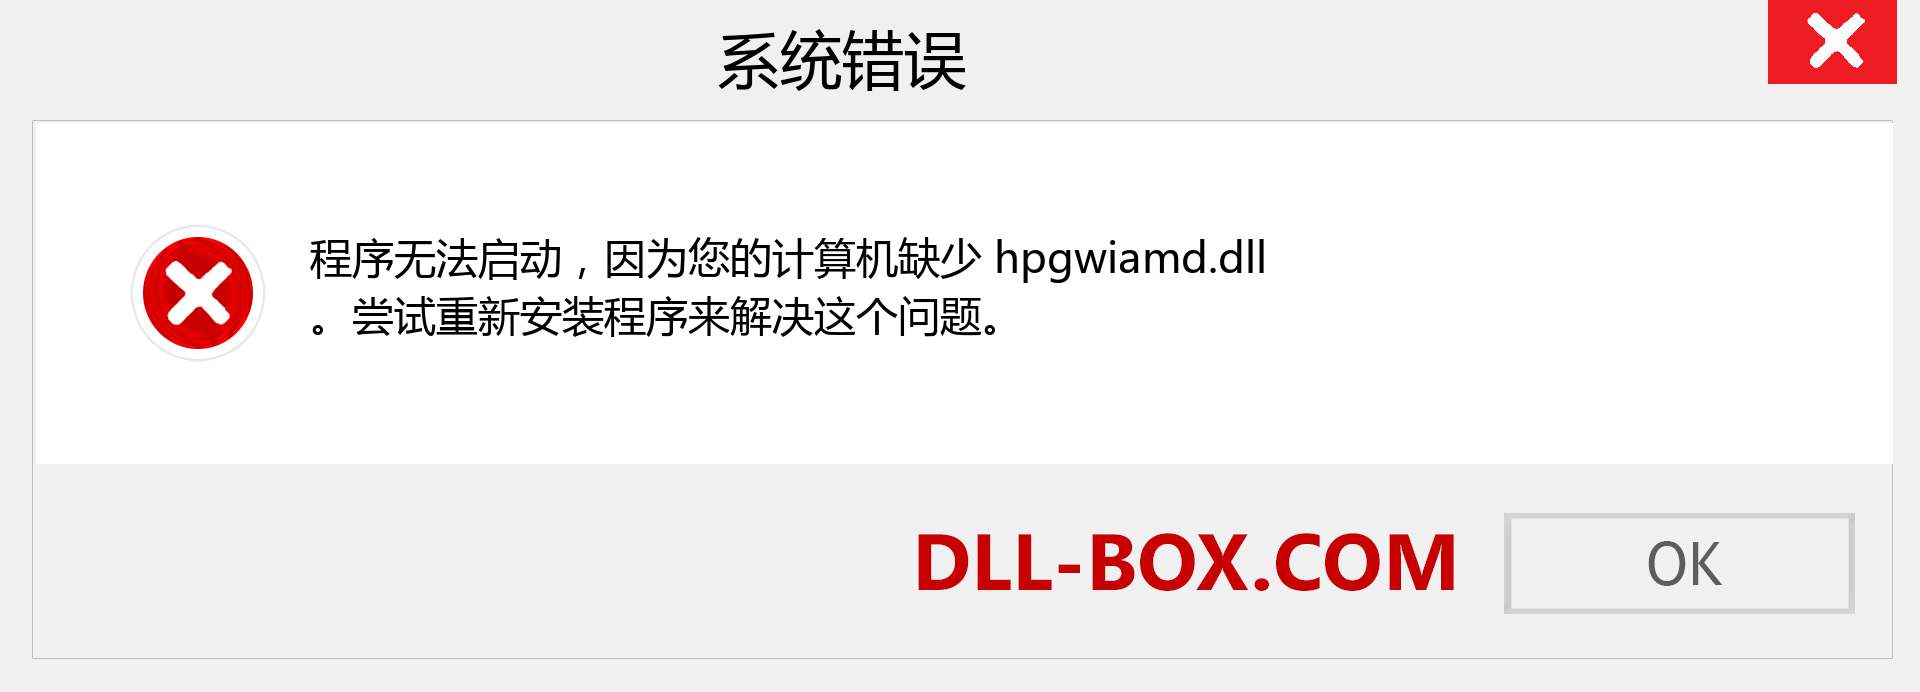 hpgwiamd.dll 文件丢失？。 适用于 Windows 7、8、10 的下载 - 修复 Windows、照片、图像上的 hpgwiamd dll 丢失错误